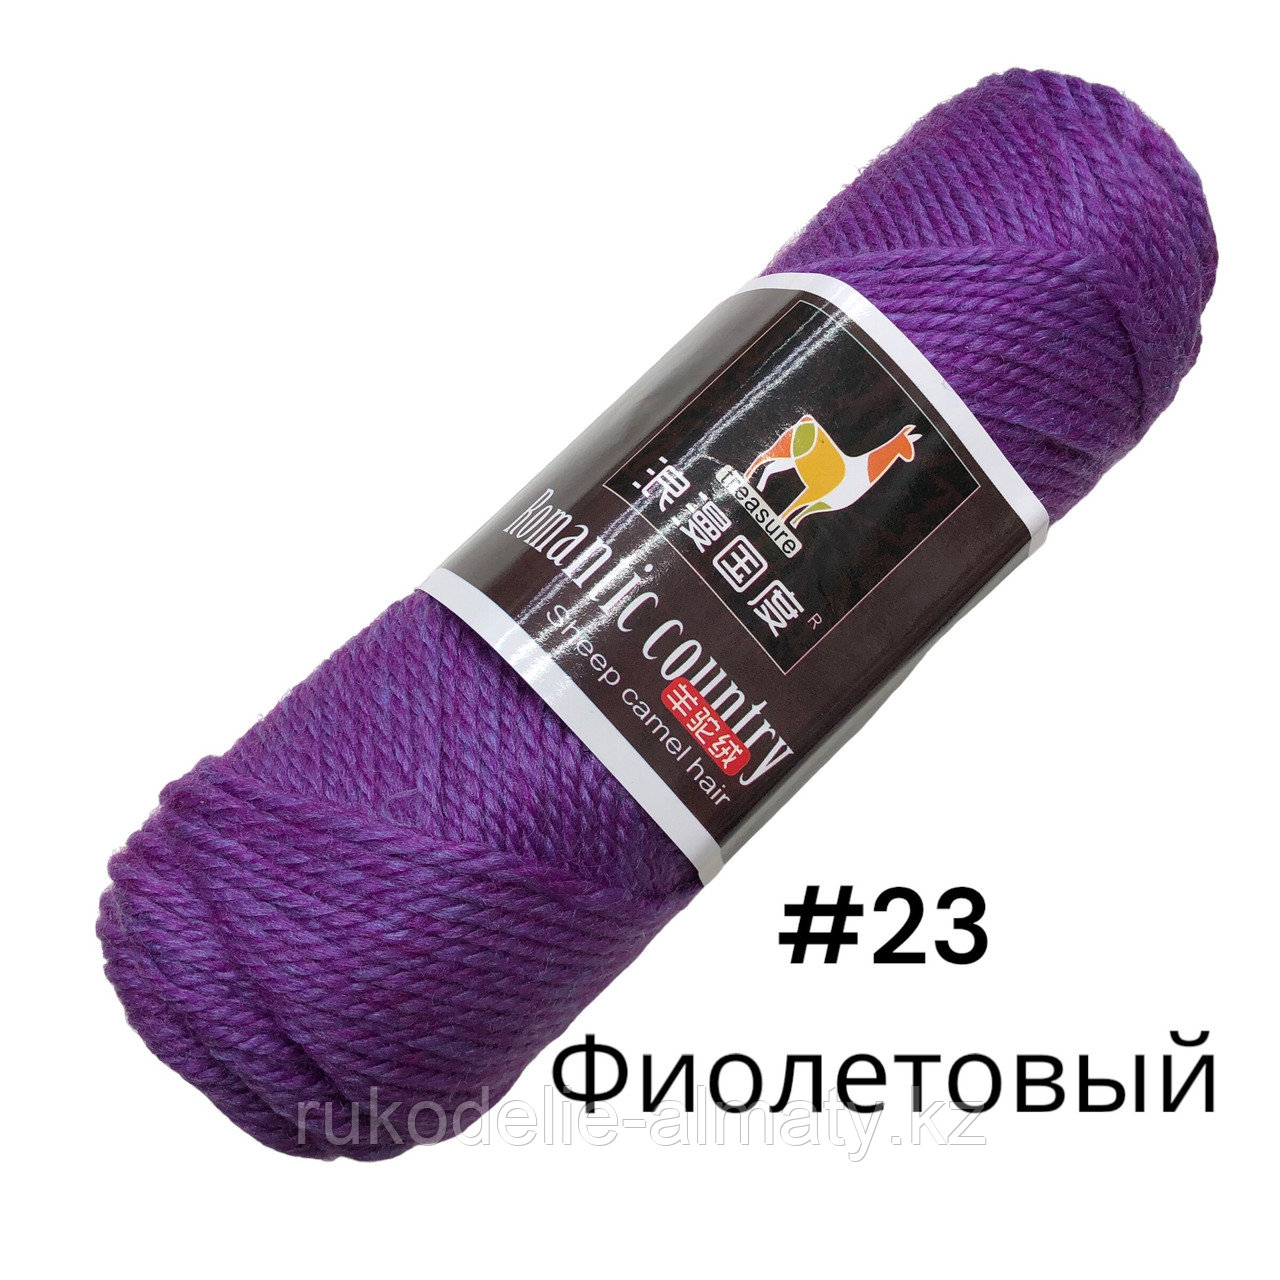 Пряжа для ручного вязания “Romantic country” в ассортимент фиолетовый